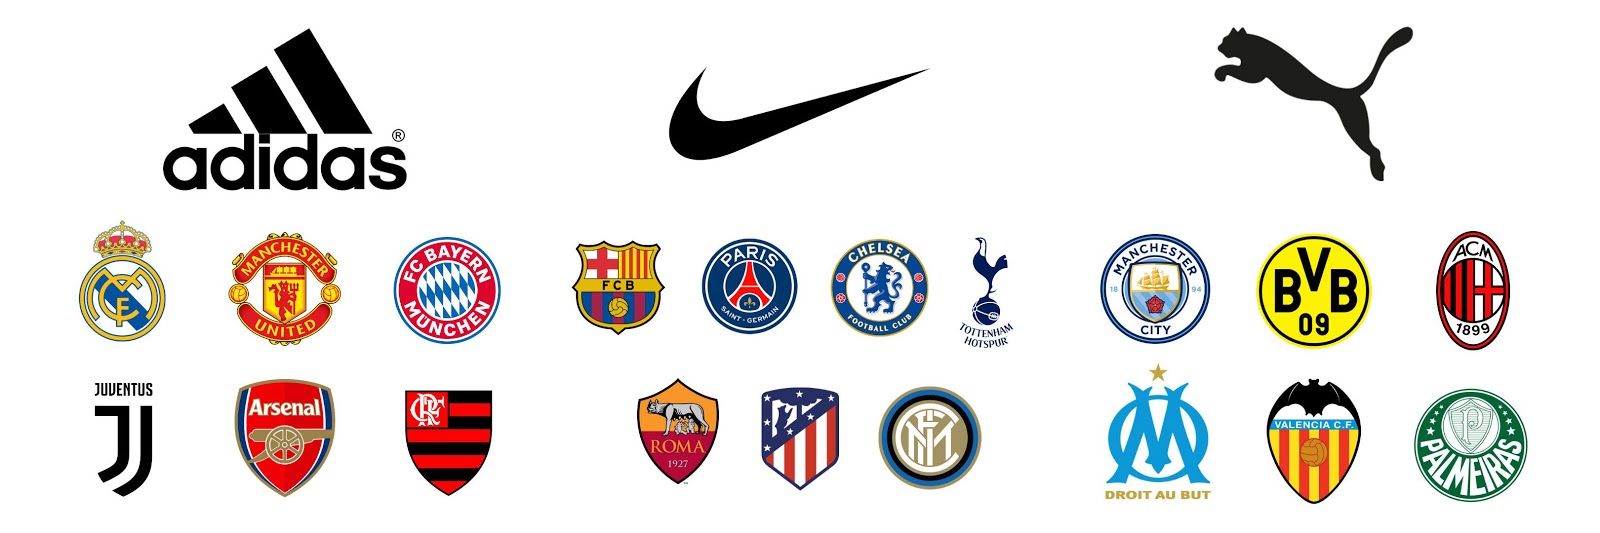 adidas sponsor football club